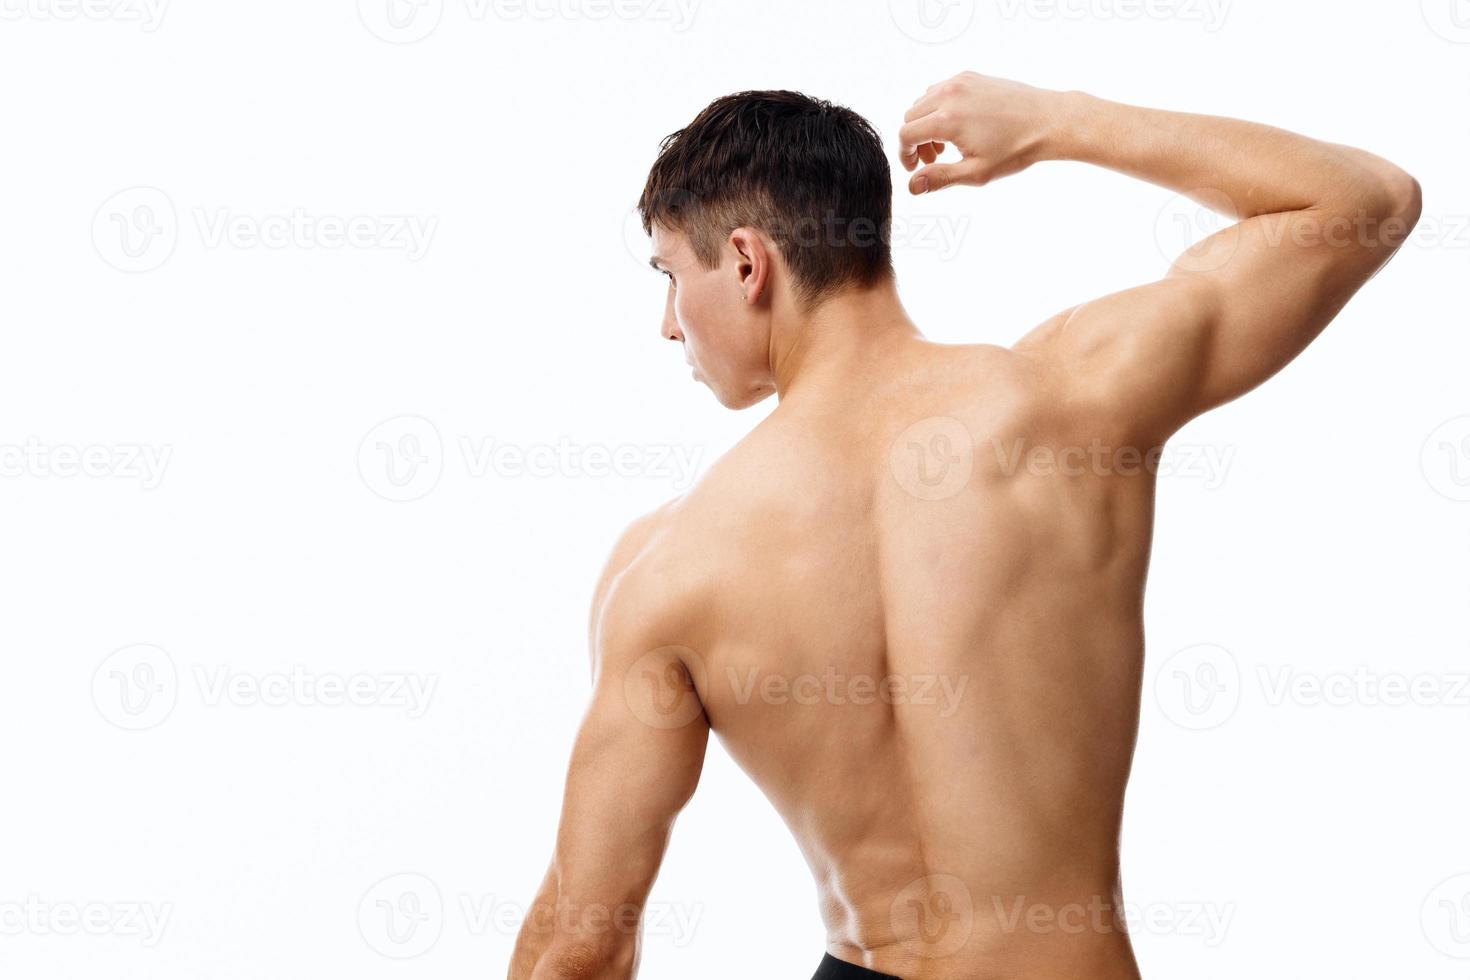 man med atletisk fysik gestikulerar med händer på isolerat bakgrund naken torso tillbaka se foto